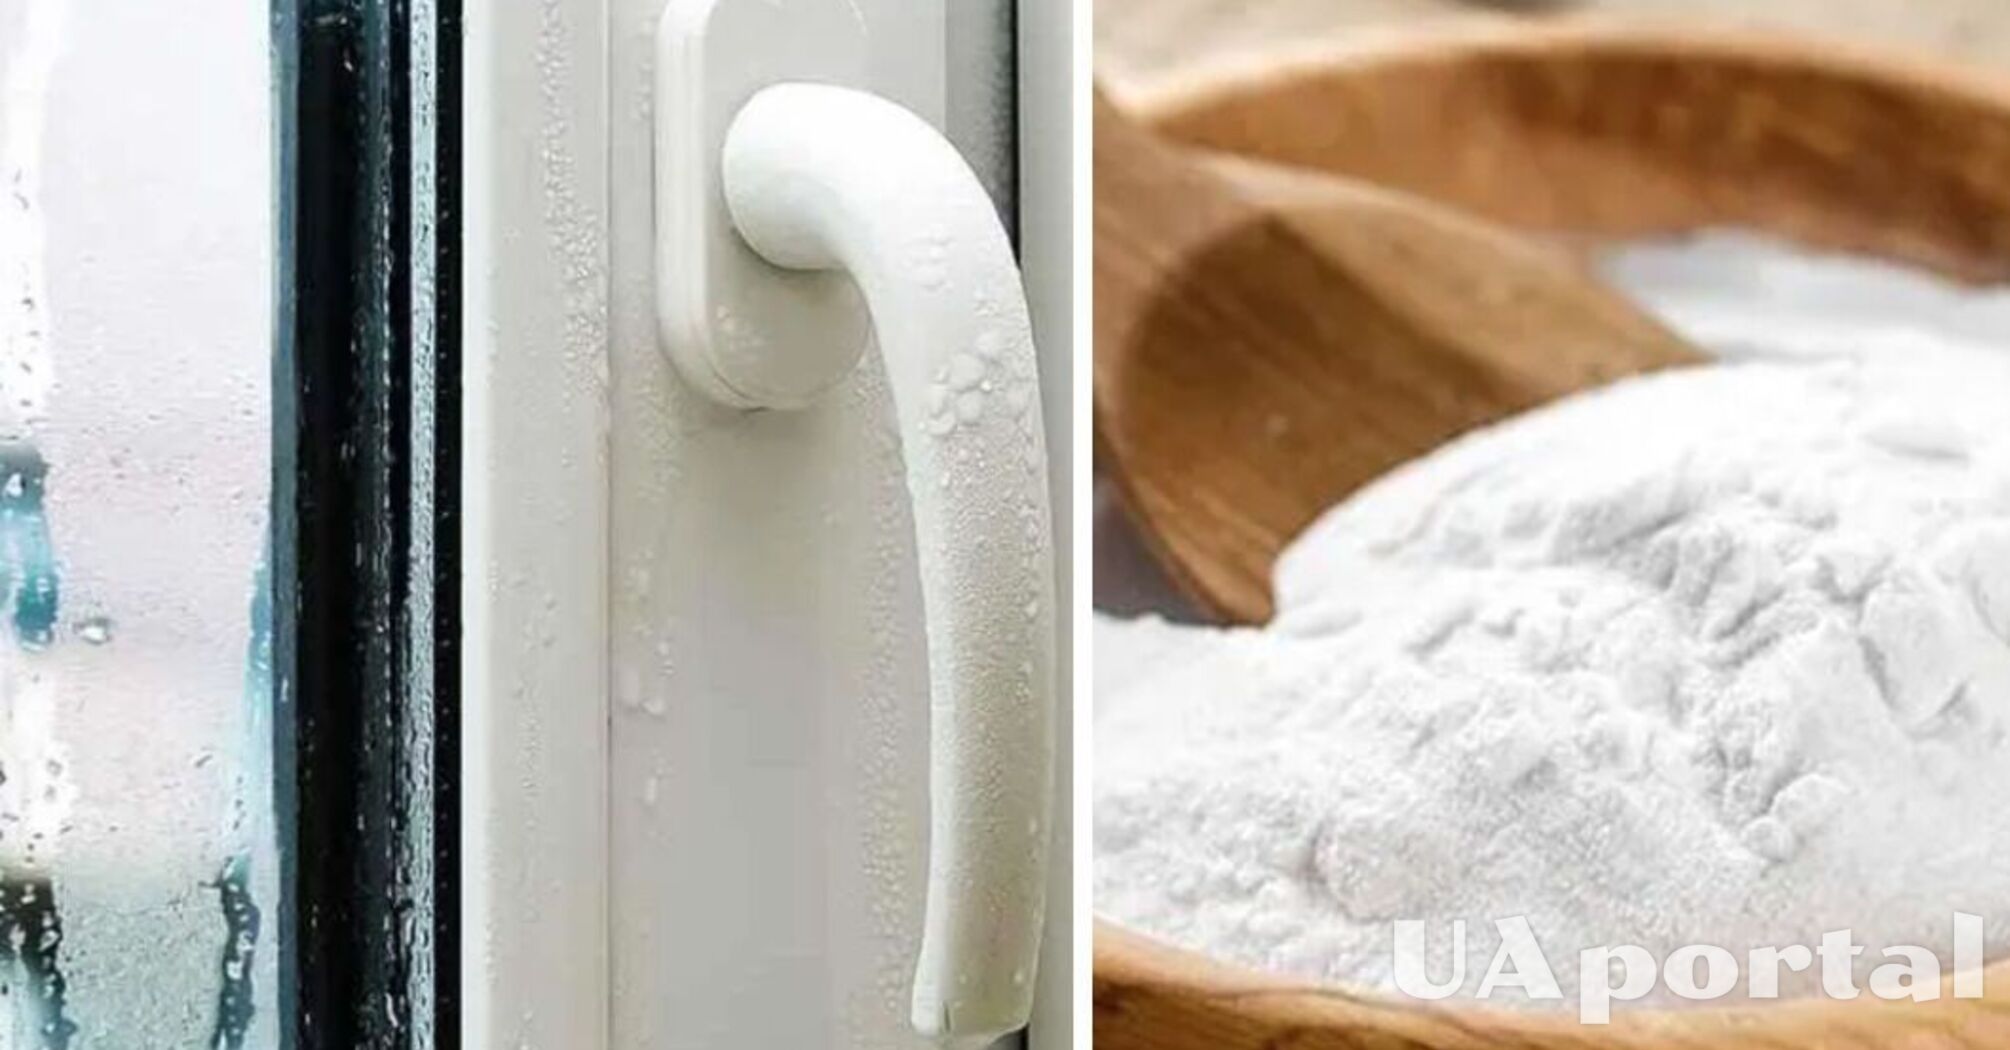 Как избавиться от конденсата на окнах с помощью соды и соли